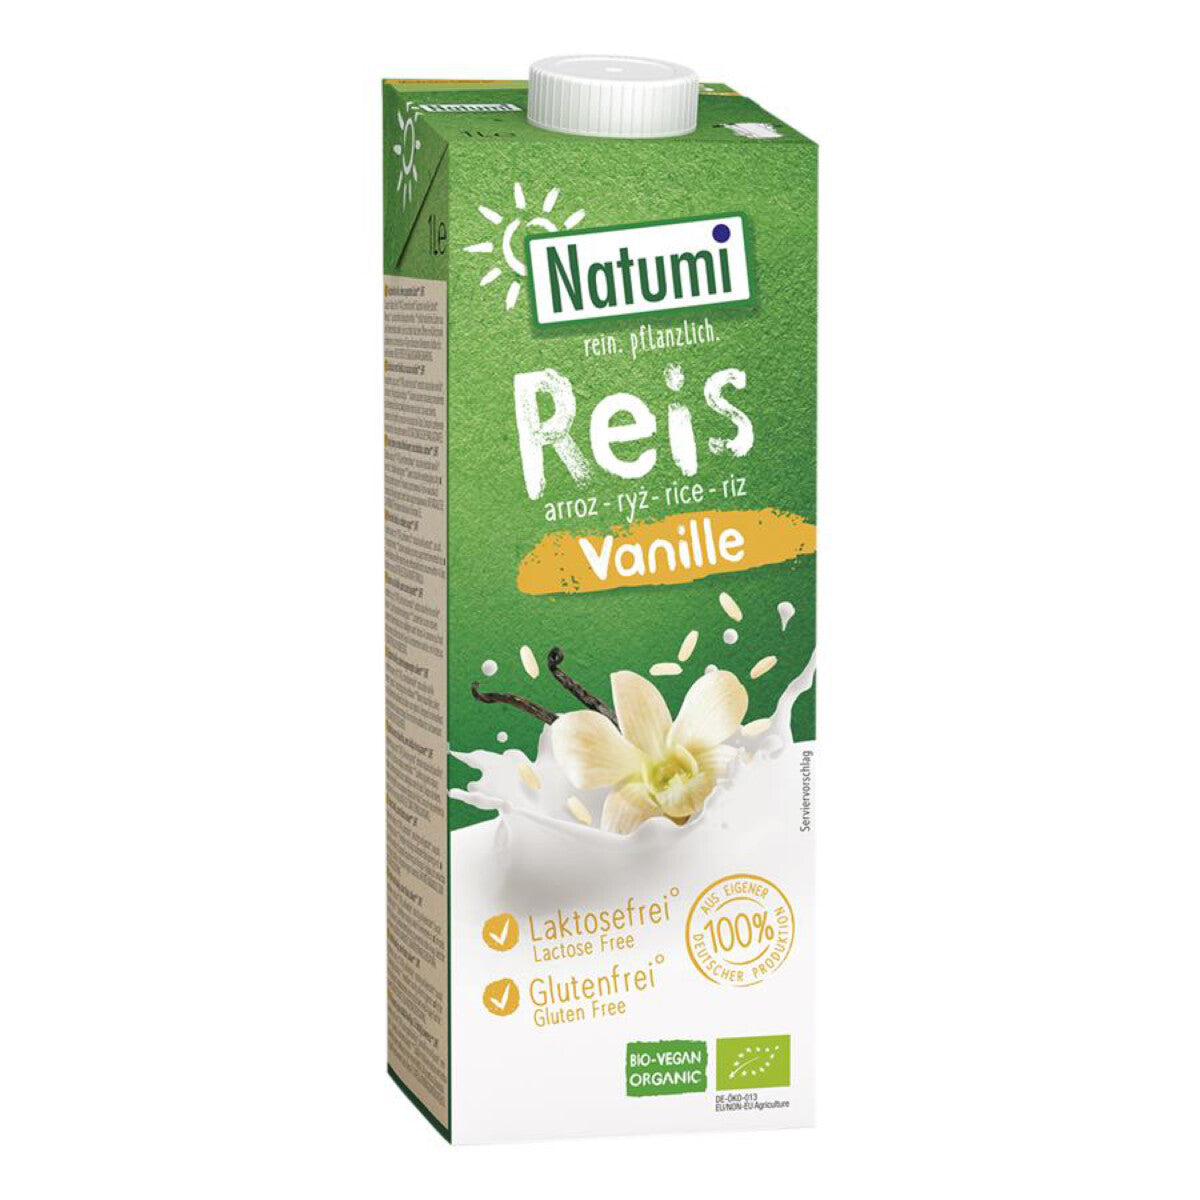 NATUMI Reisdrink Vanille ohne Zucker - 1 l